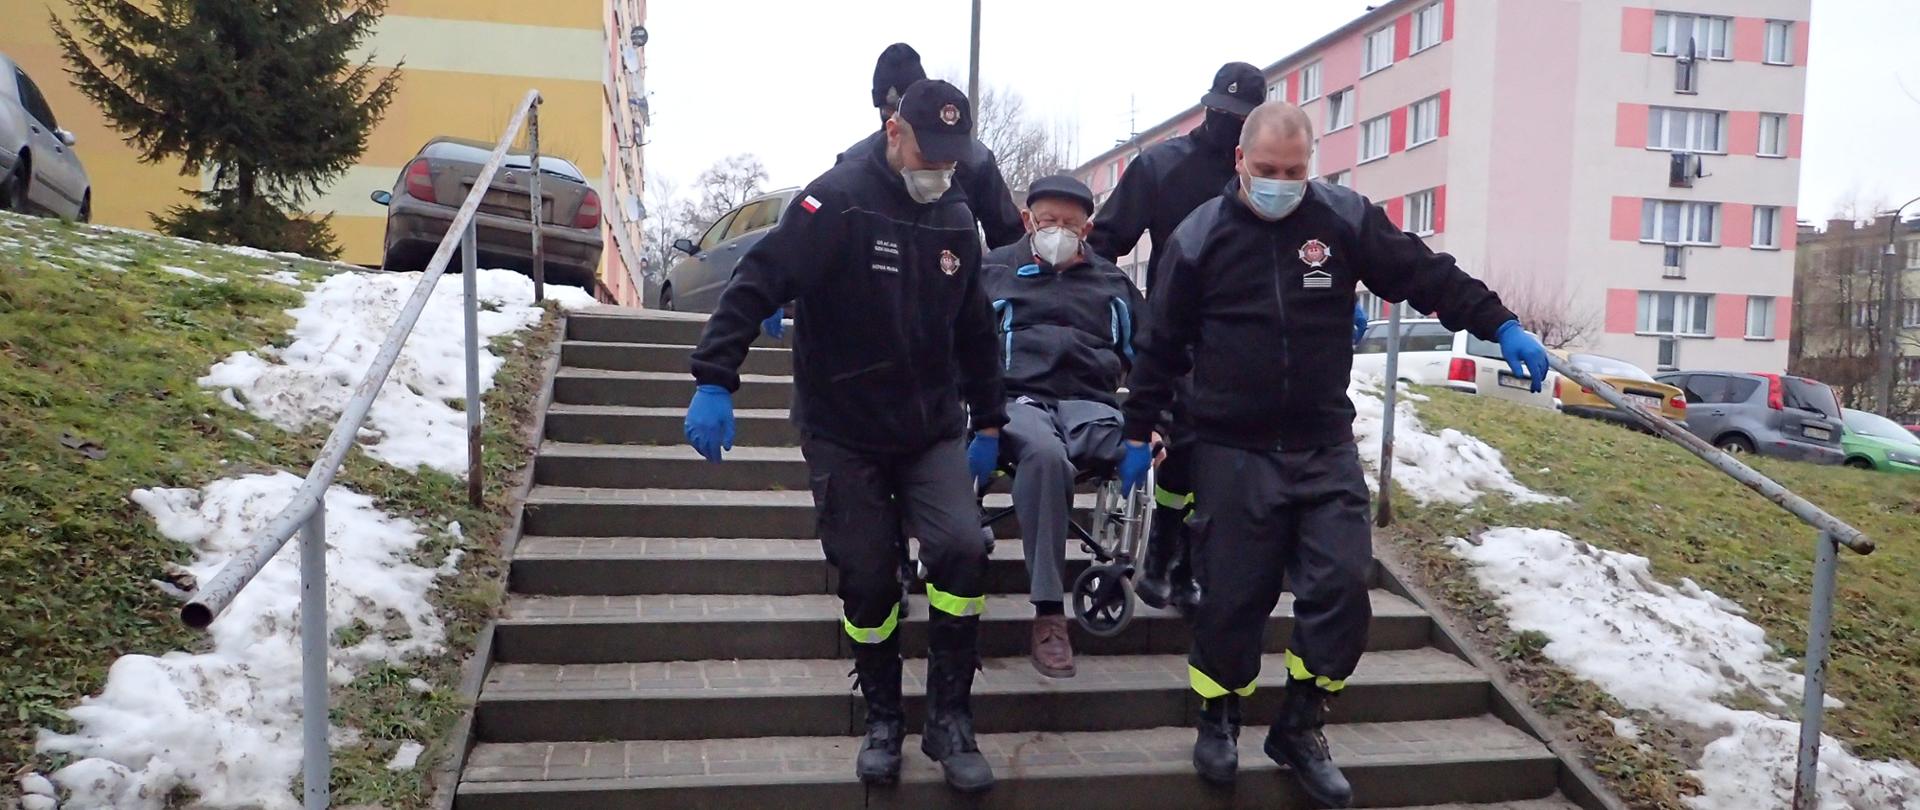 Czterech druhów OSP znoszących mężczyznę na wózku inwalidzkim ze schodów na osiedlu mieszkalnym.